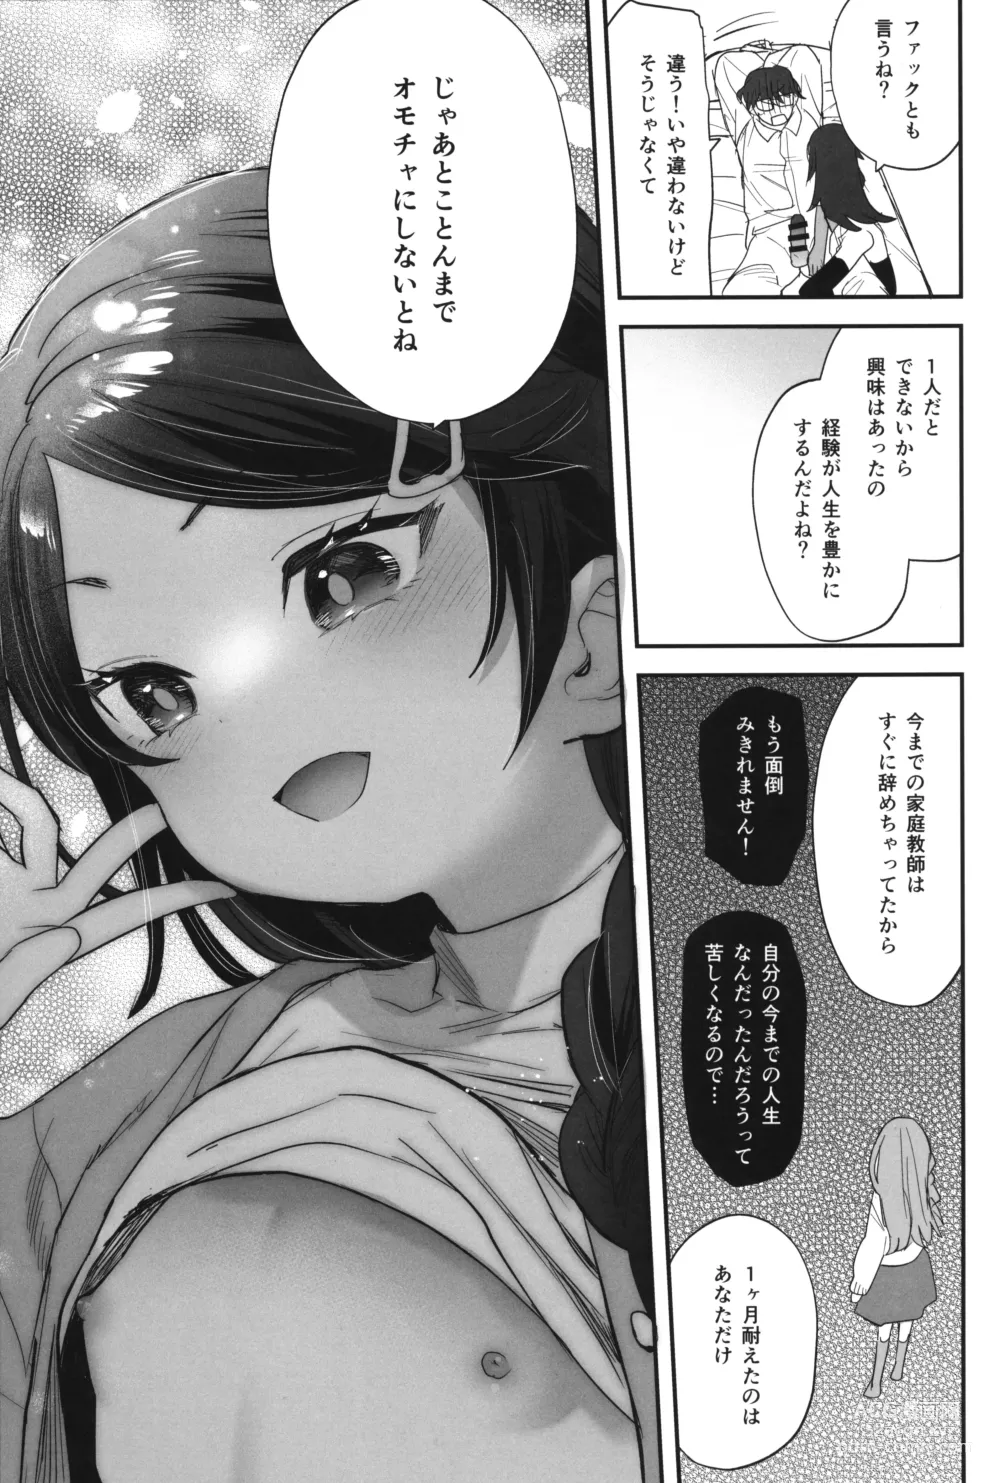 Page 8 of doujinshi Futoukou de Daitensai no Kimi no Ana ga Umaru made